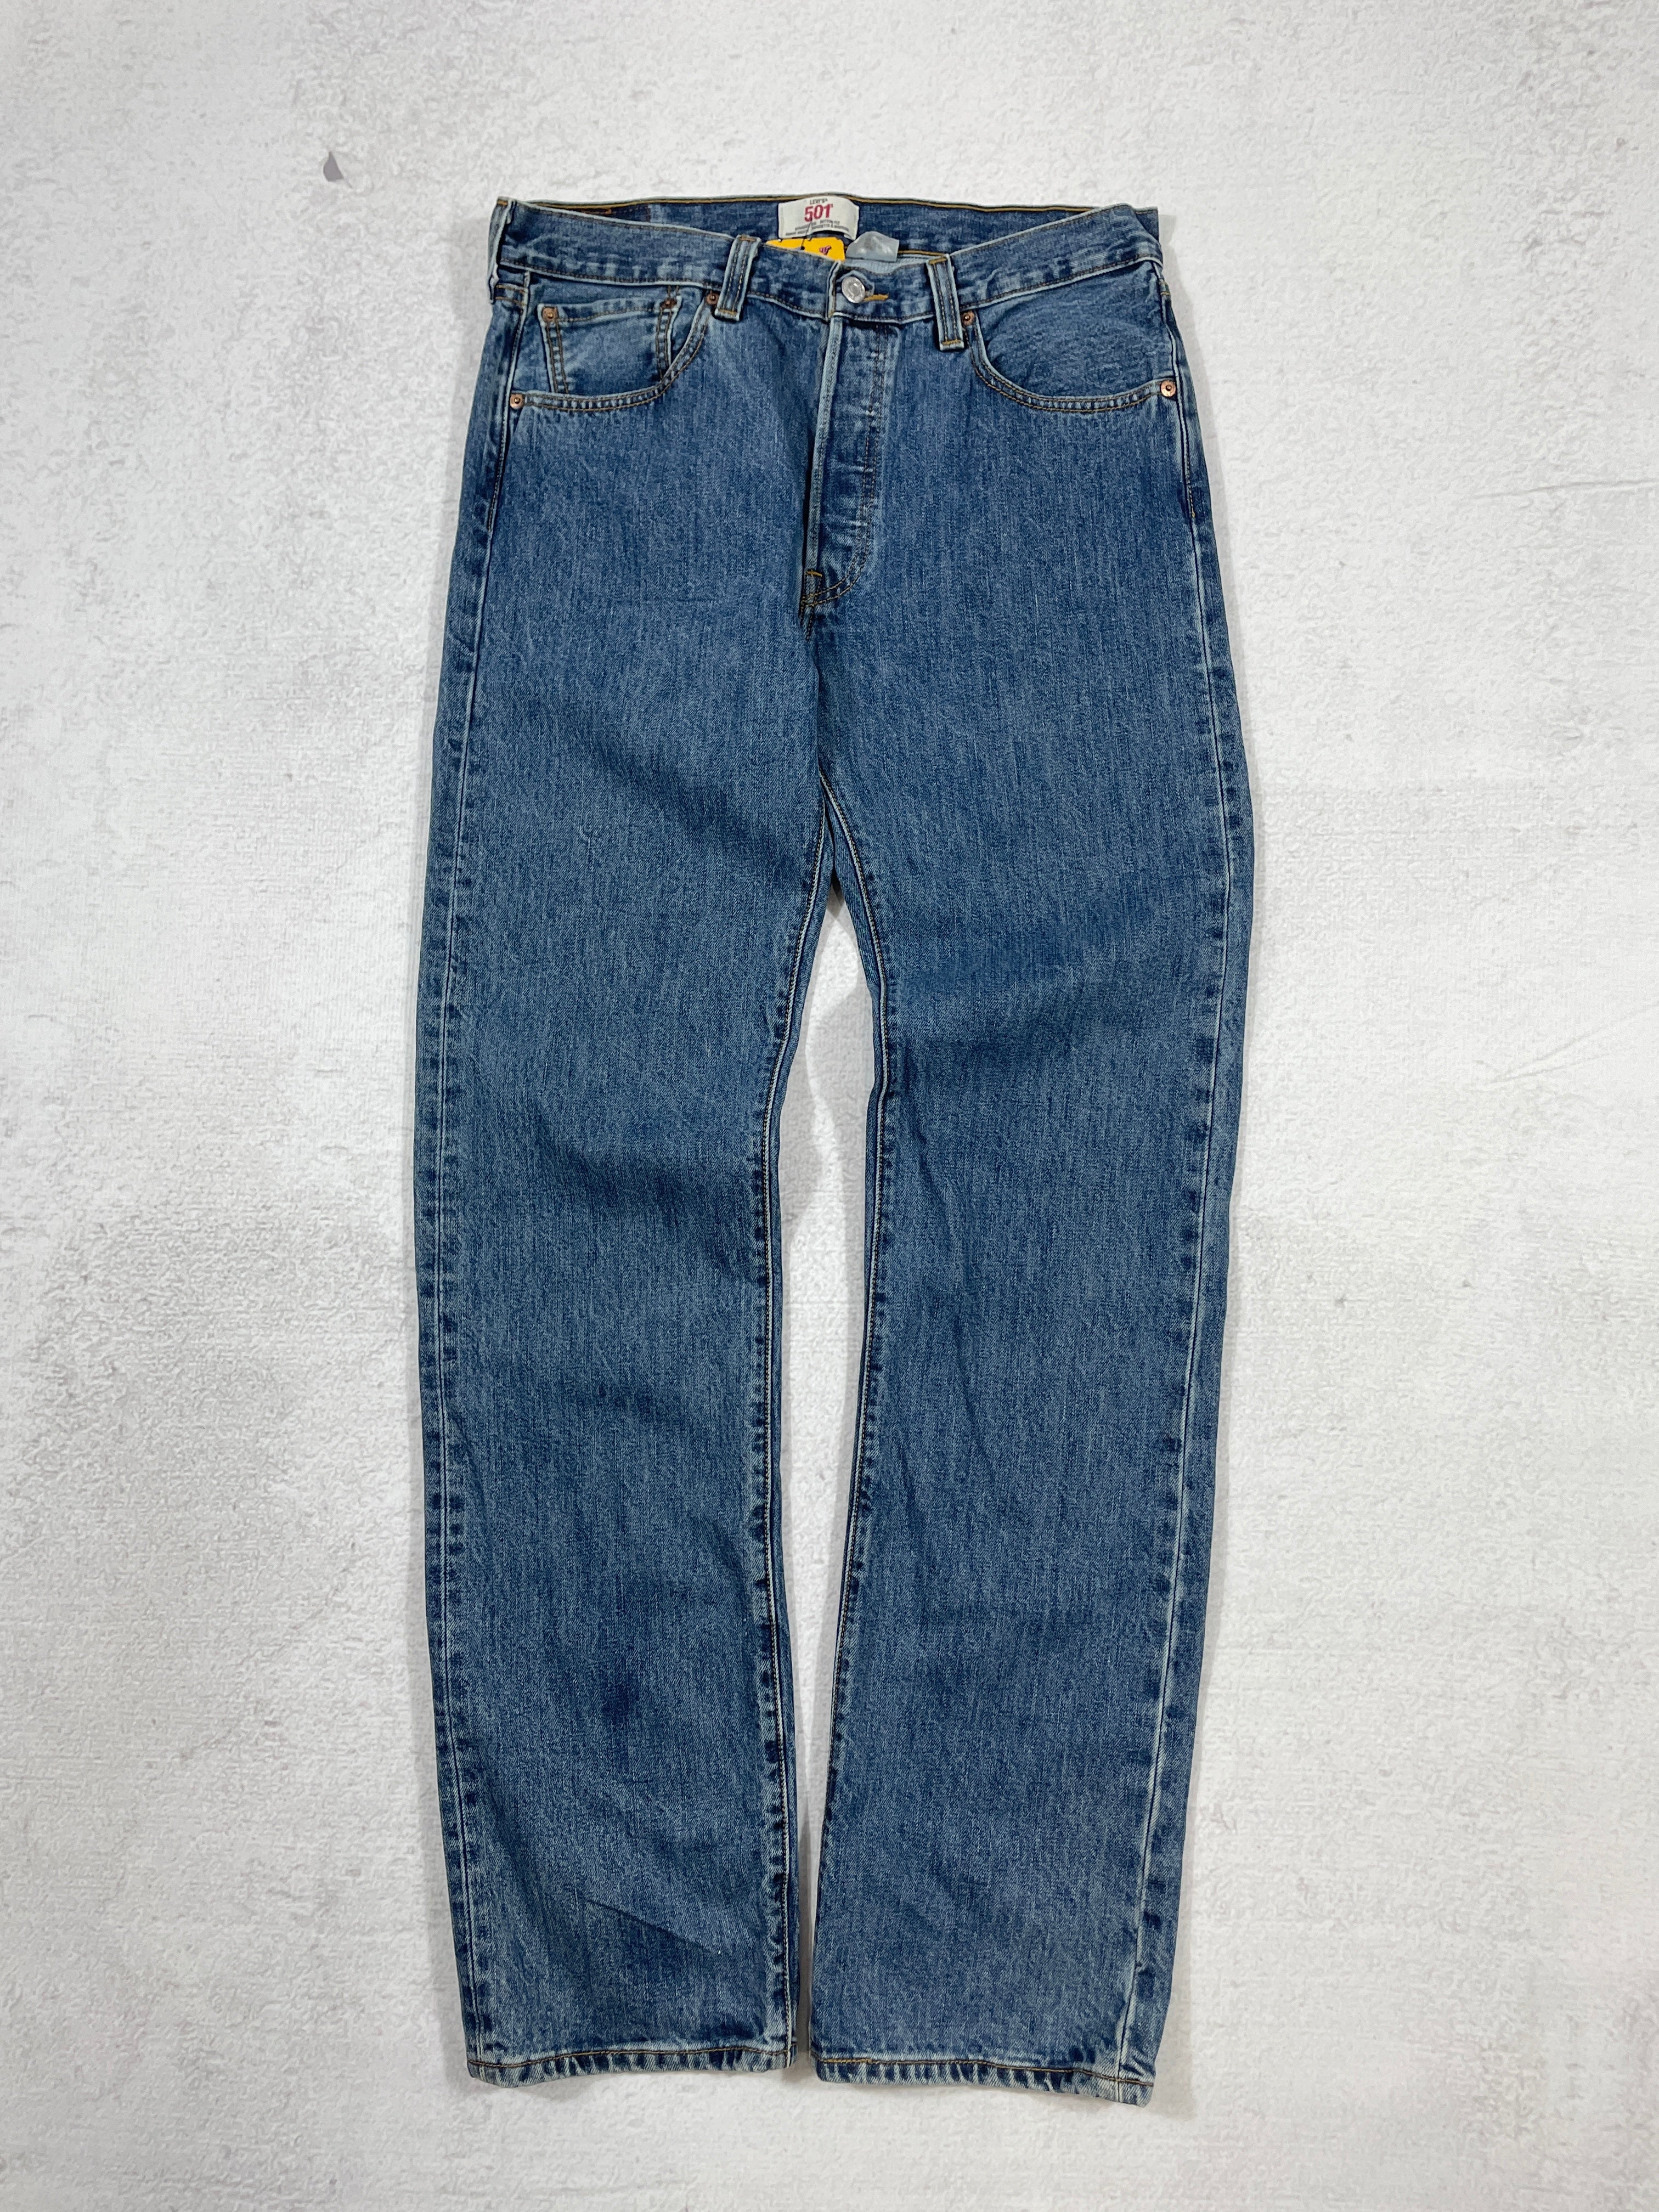 Vintage Levis 501 Jeans - Men's 33Wx34